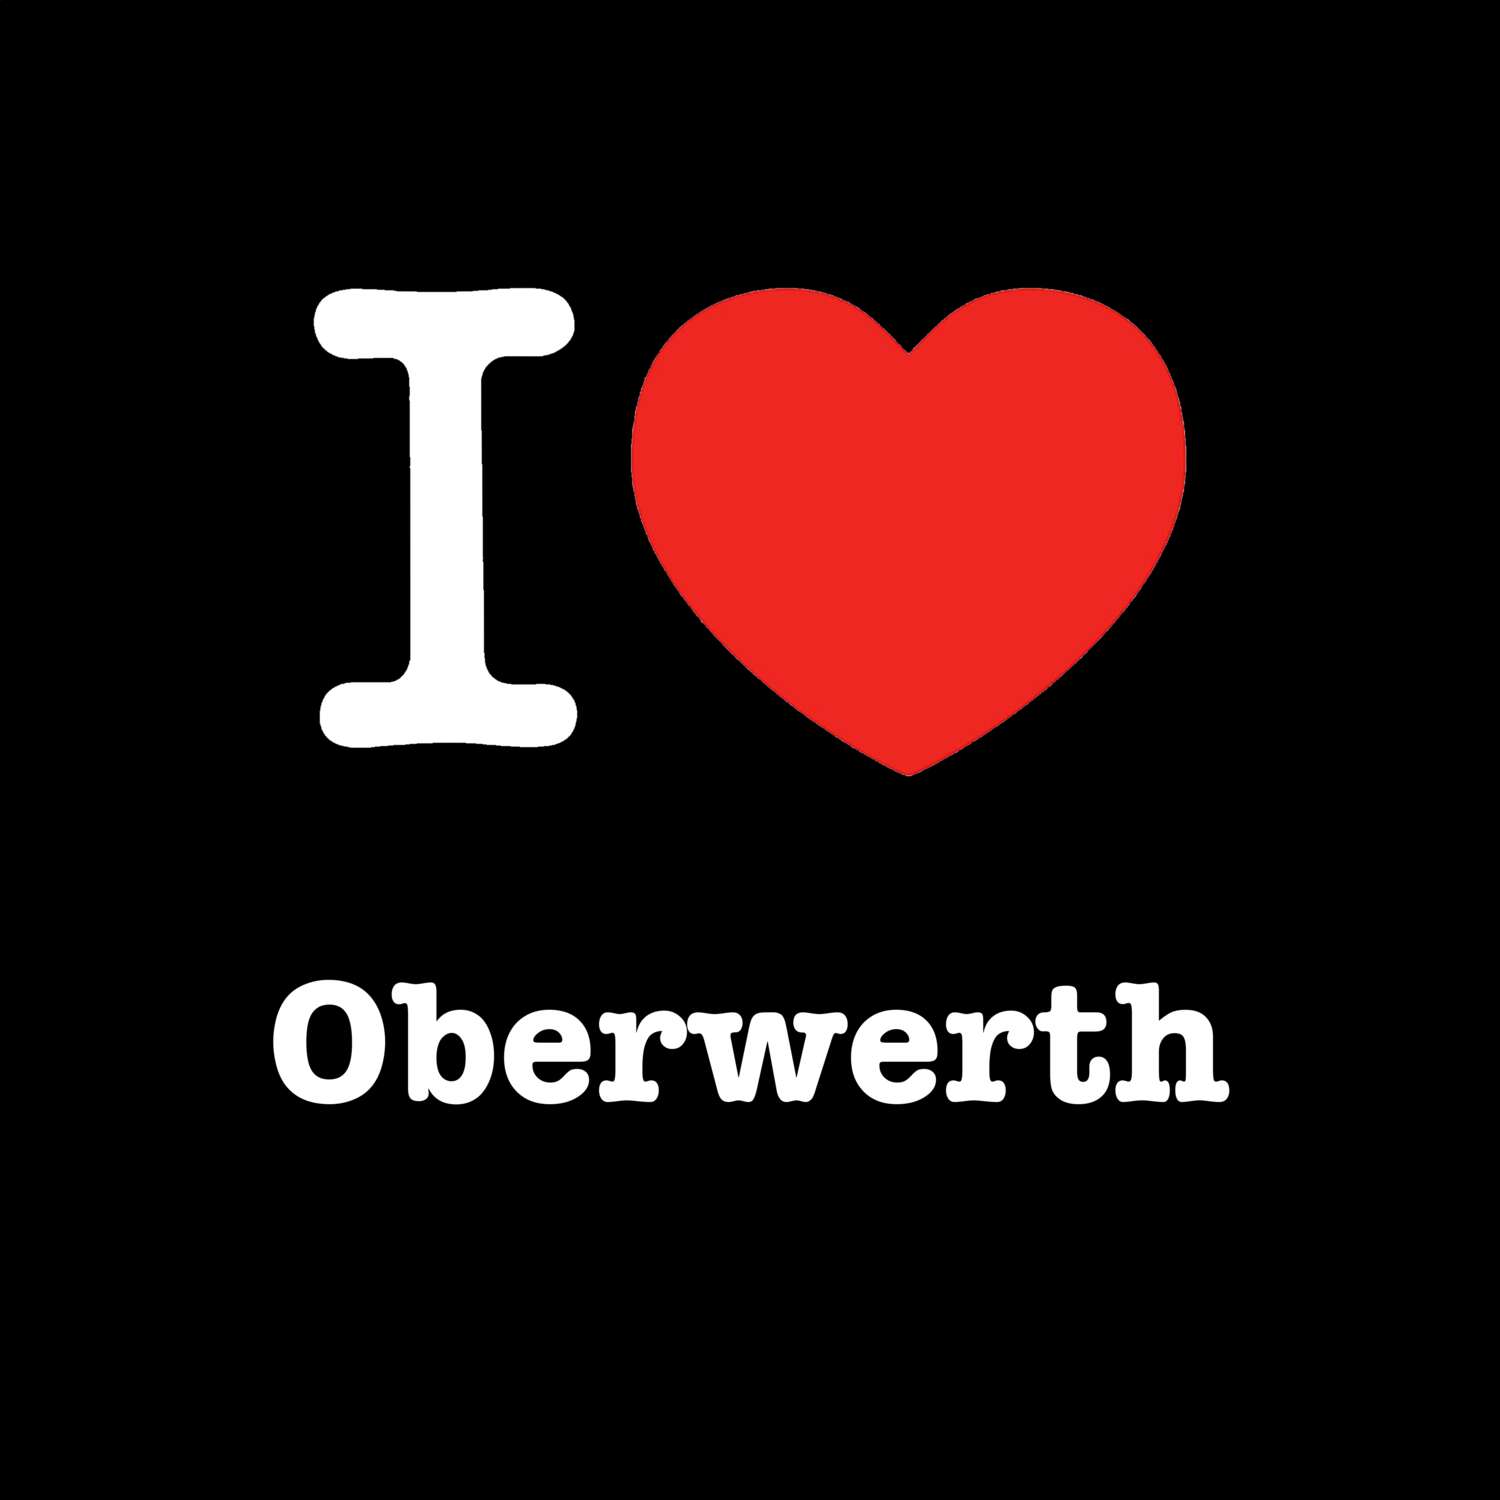 Oberwerth T-Shirt »I love«